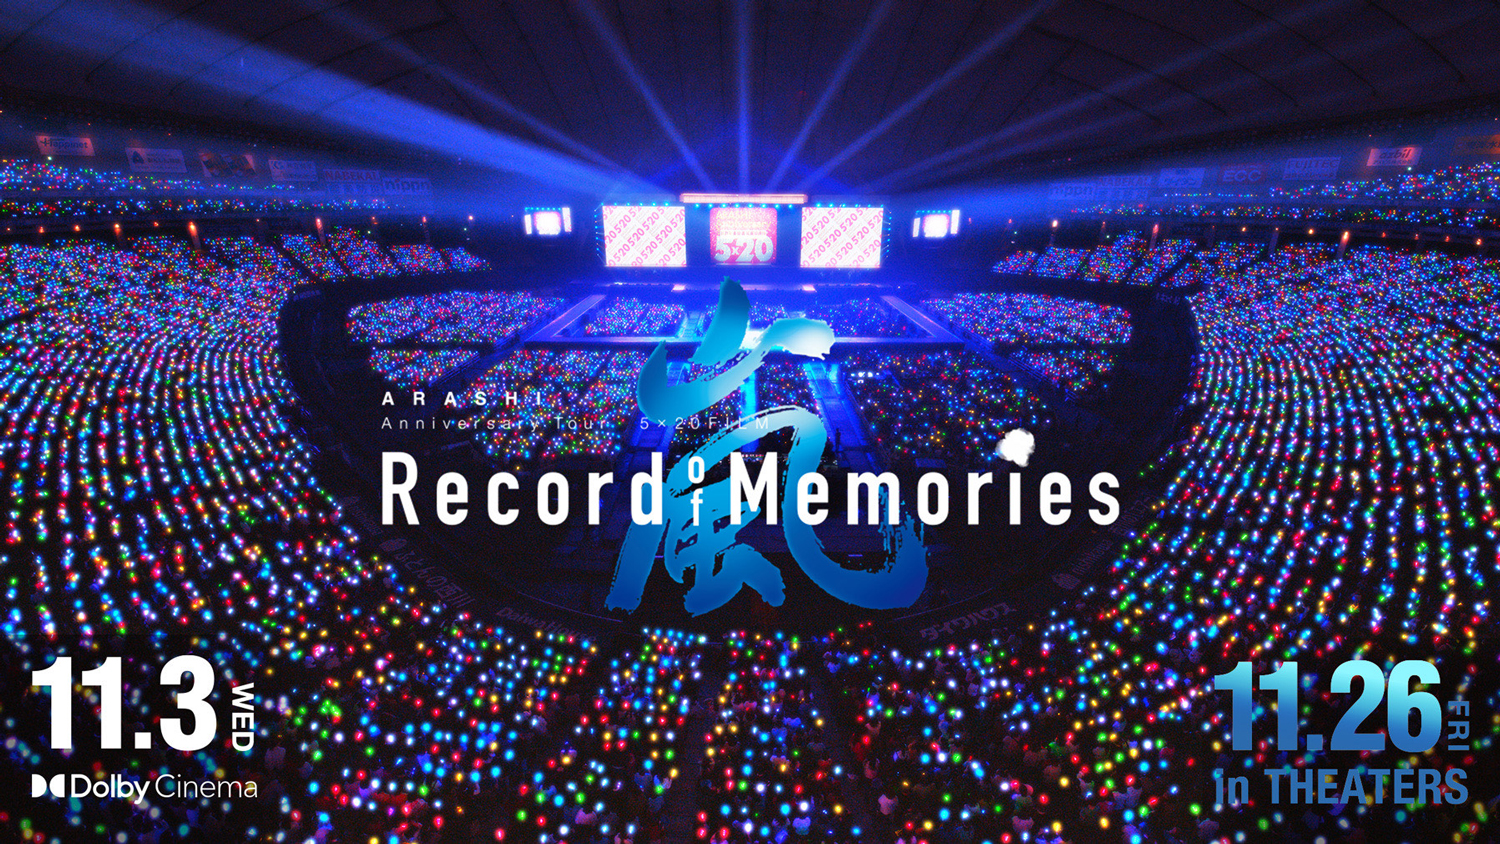 嵐Tour 5×20 FILM Record of Memories